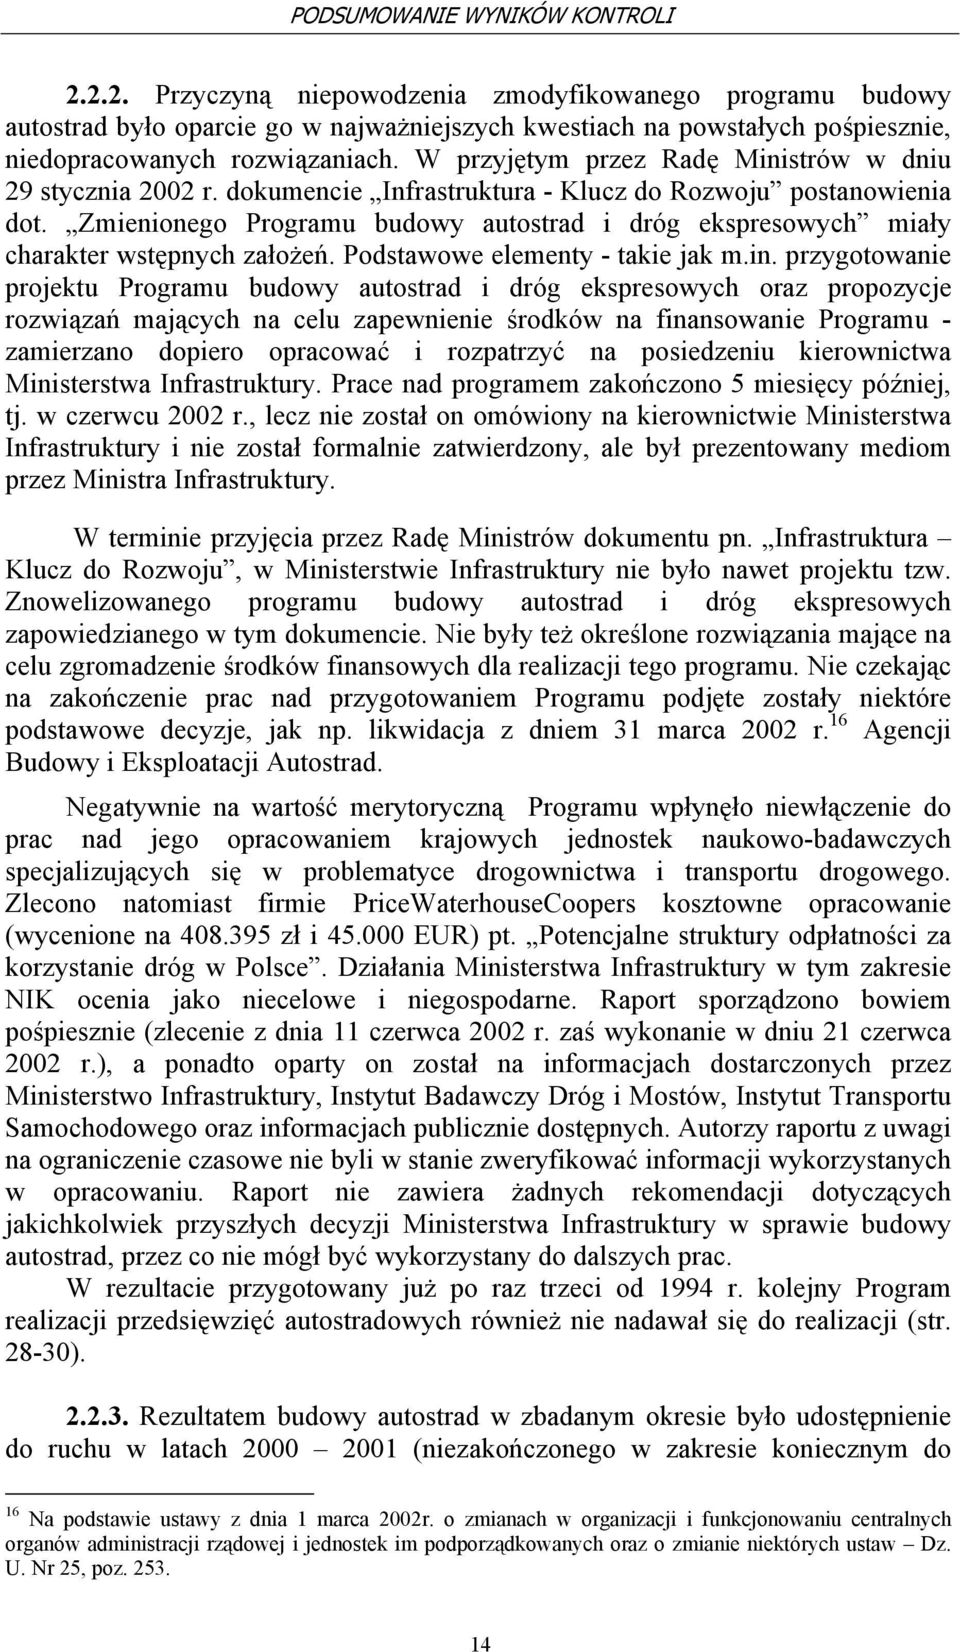 W przyjętym przez Radę Ministrów w dniu 29 stycznia 2002 r. dokumencie Infrastruktura - Klucz do Rozwoju postanowienia dot.